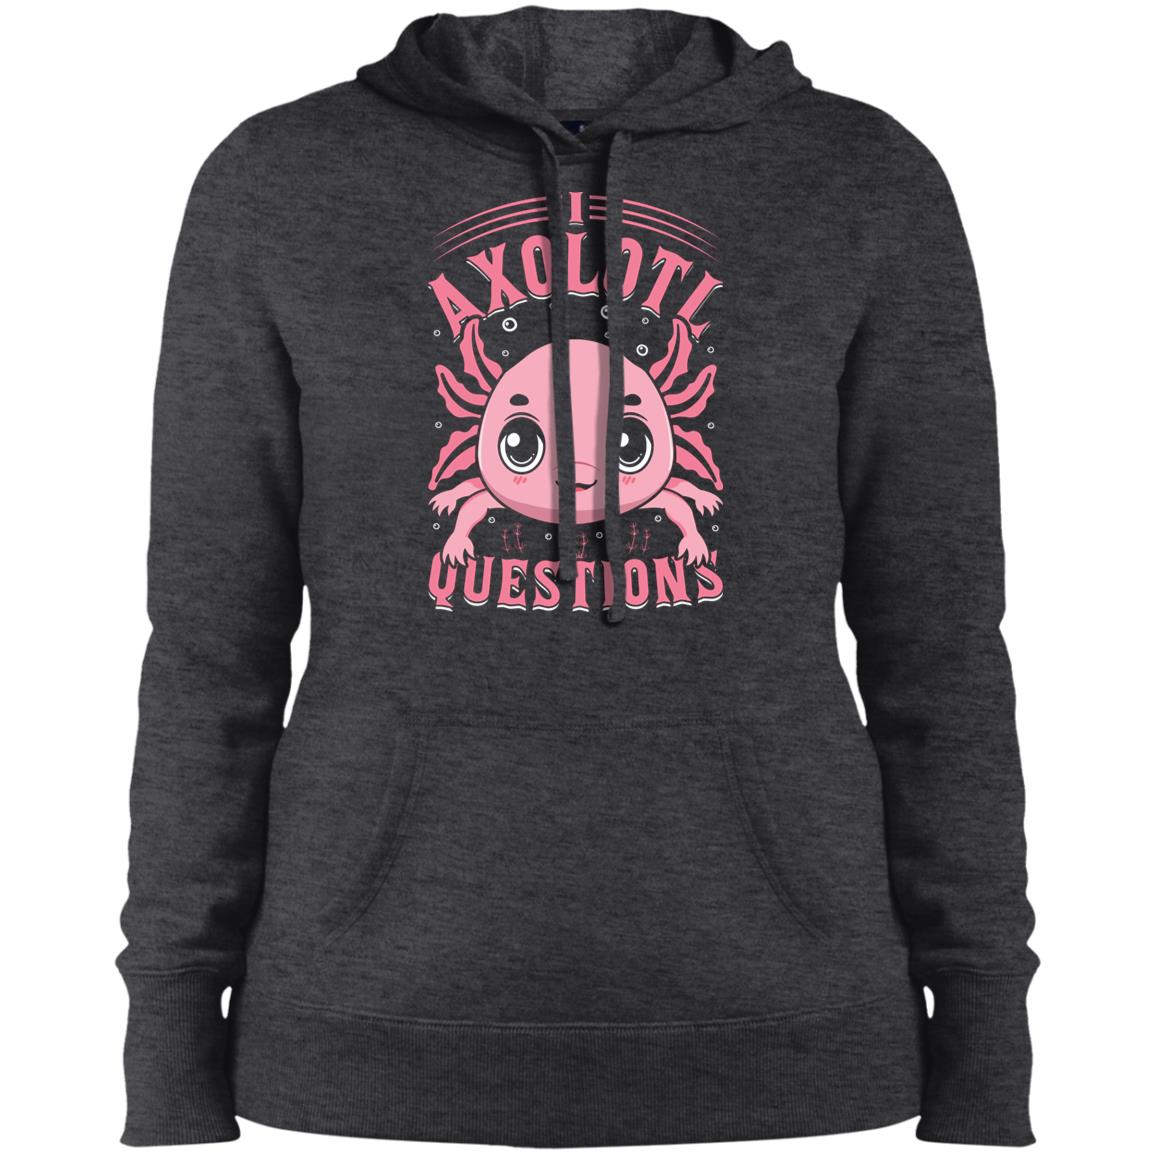 I Axolotl Questions - Hoodie